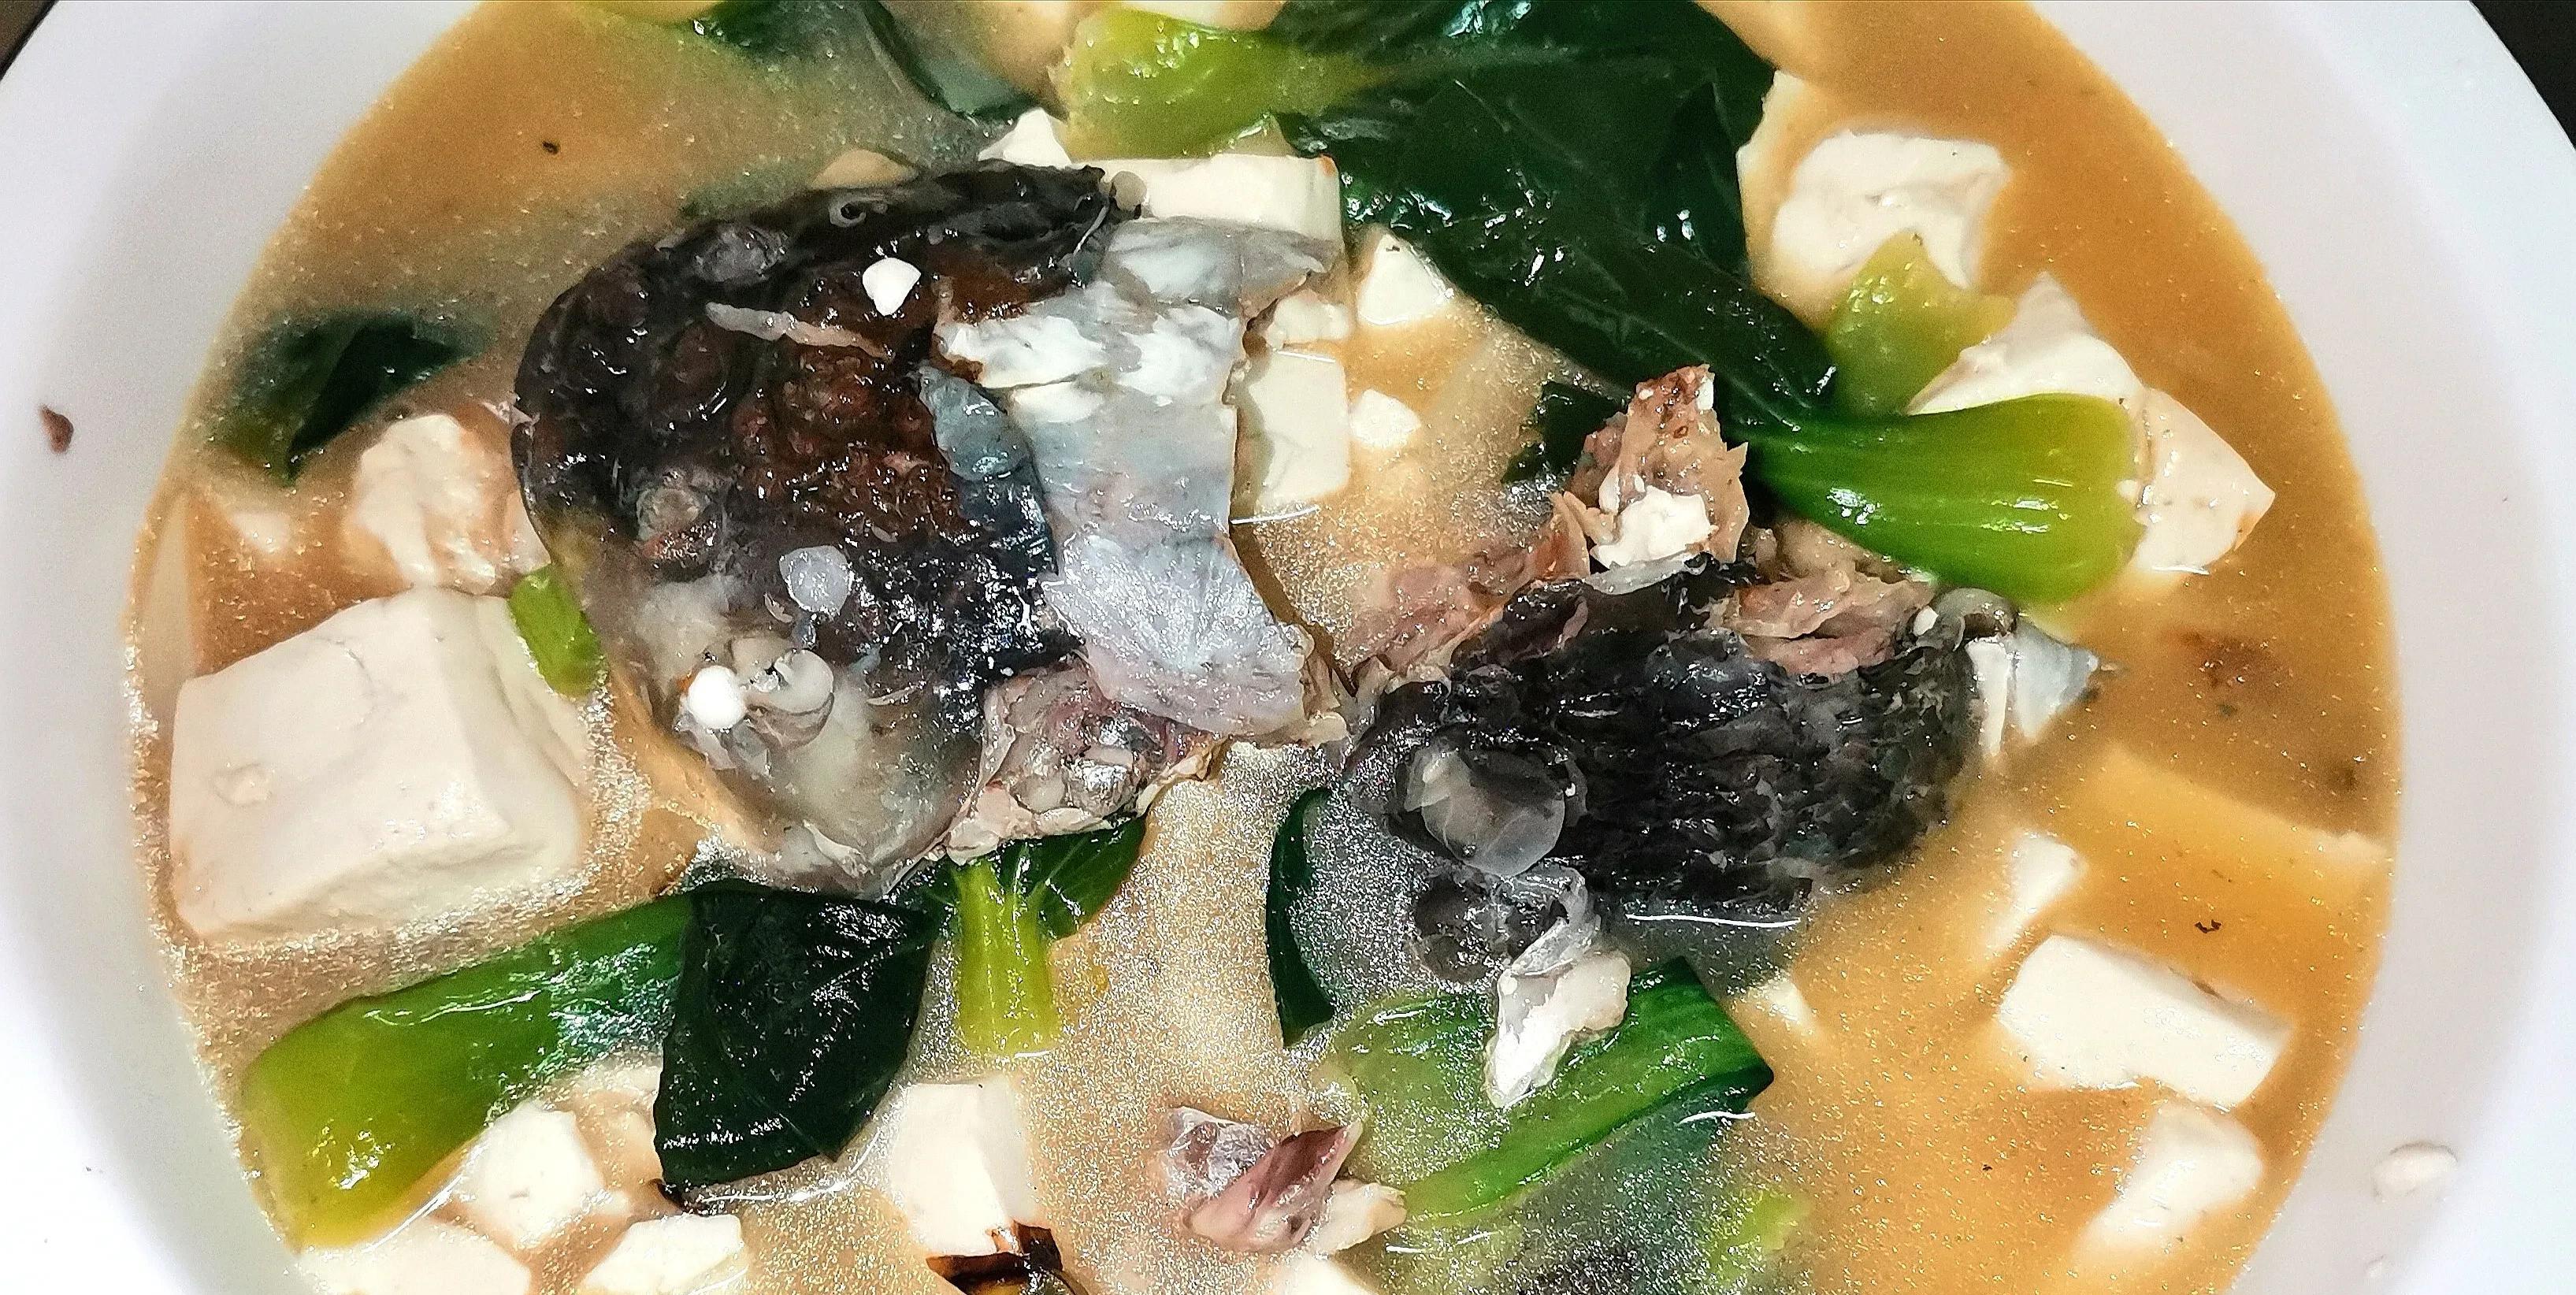 小贴士:鱼头炖豆腐,最好把鱼头用油煎一下,有时买不好,鱼腥味可大